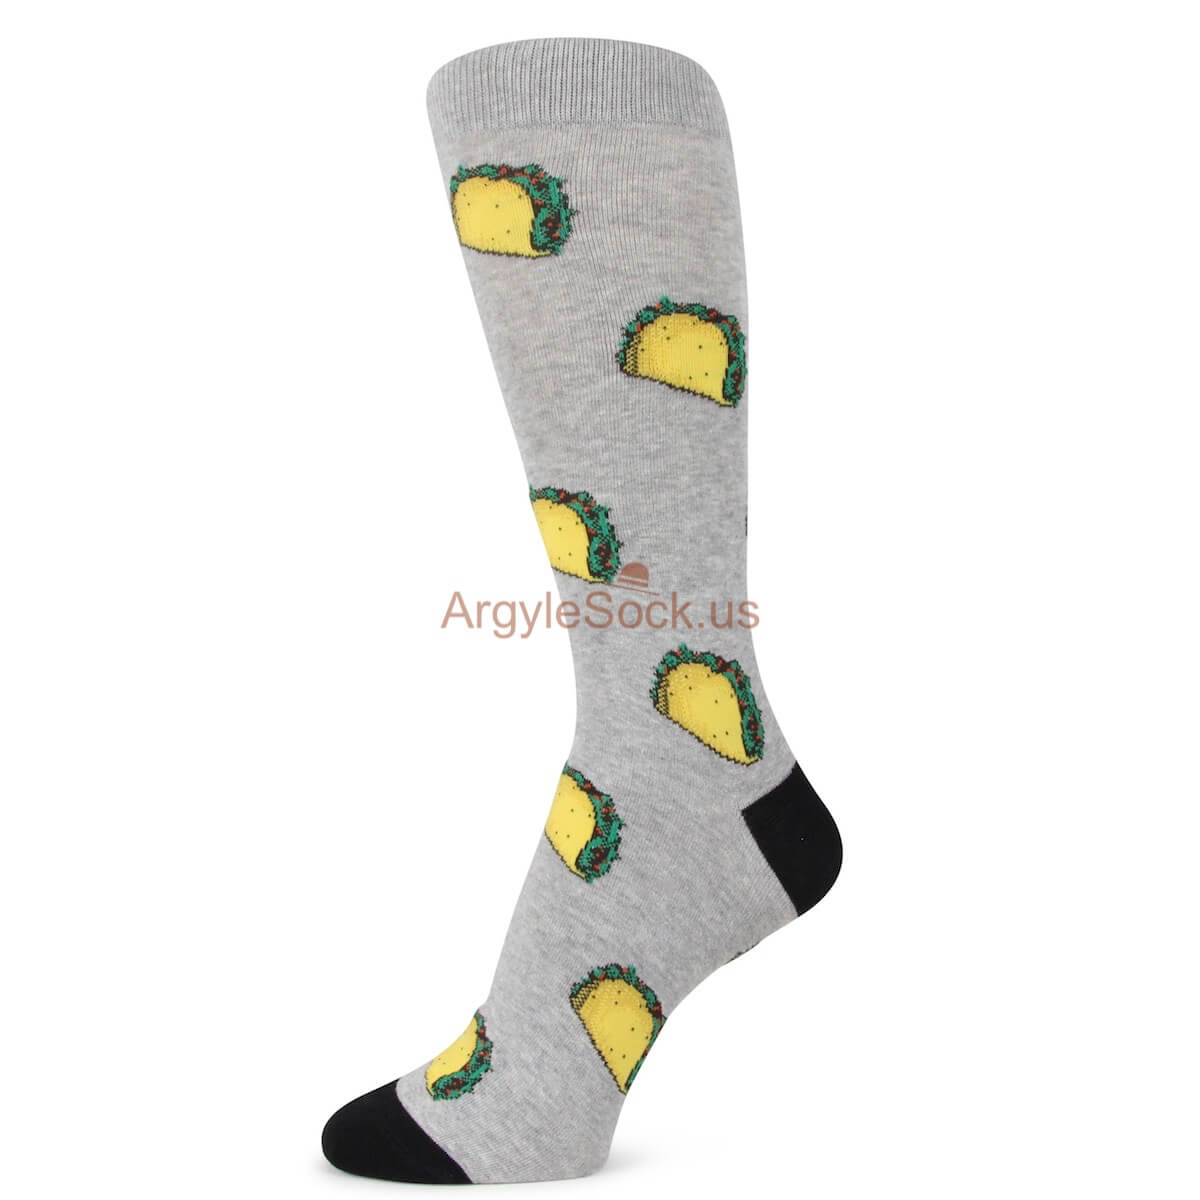 Crispy Taco Themed Socks for Men